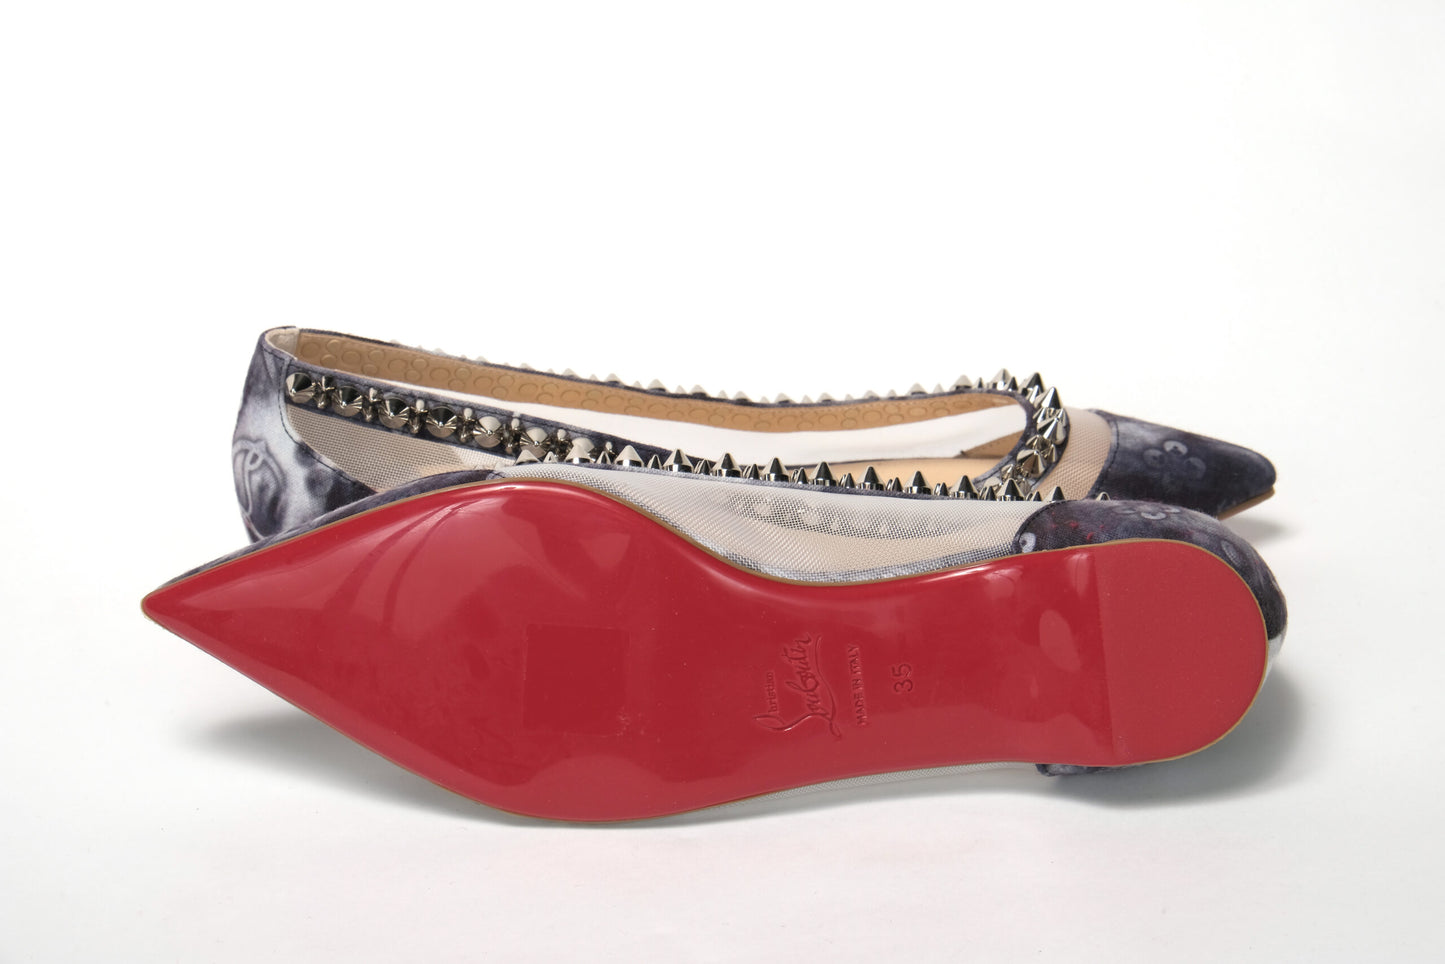 حذاء كريستيان لوبوتان متعدد الألوان بطبعة فضية ومقدمة مسطحة